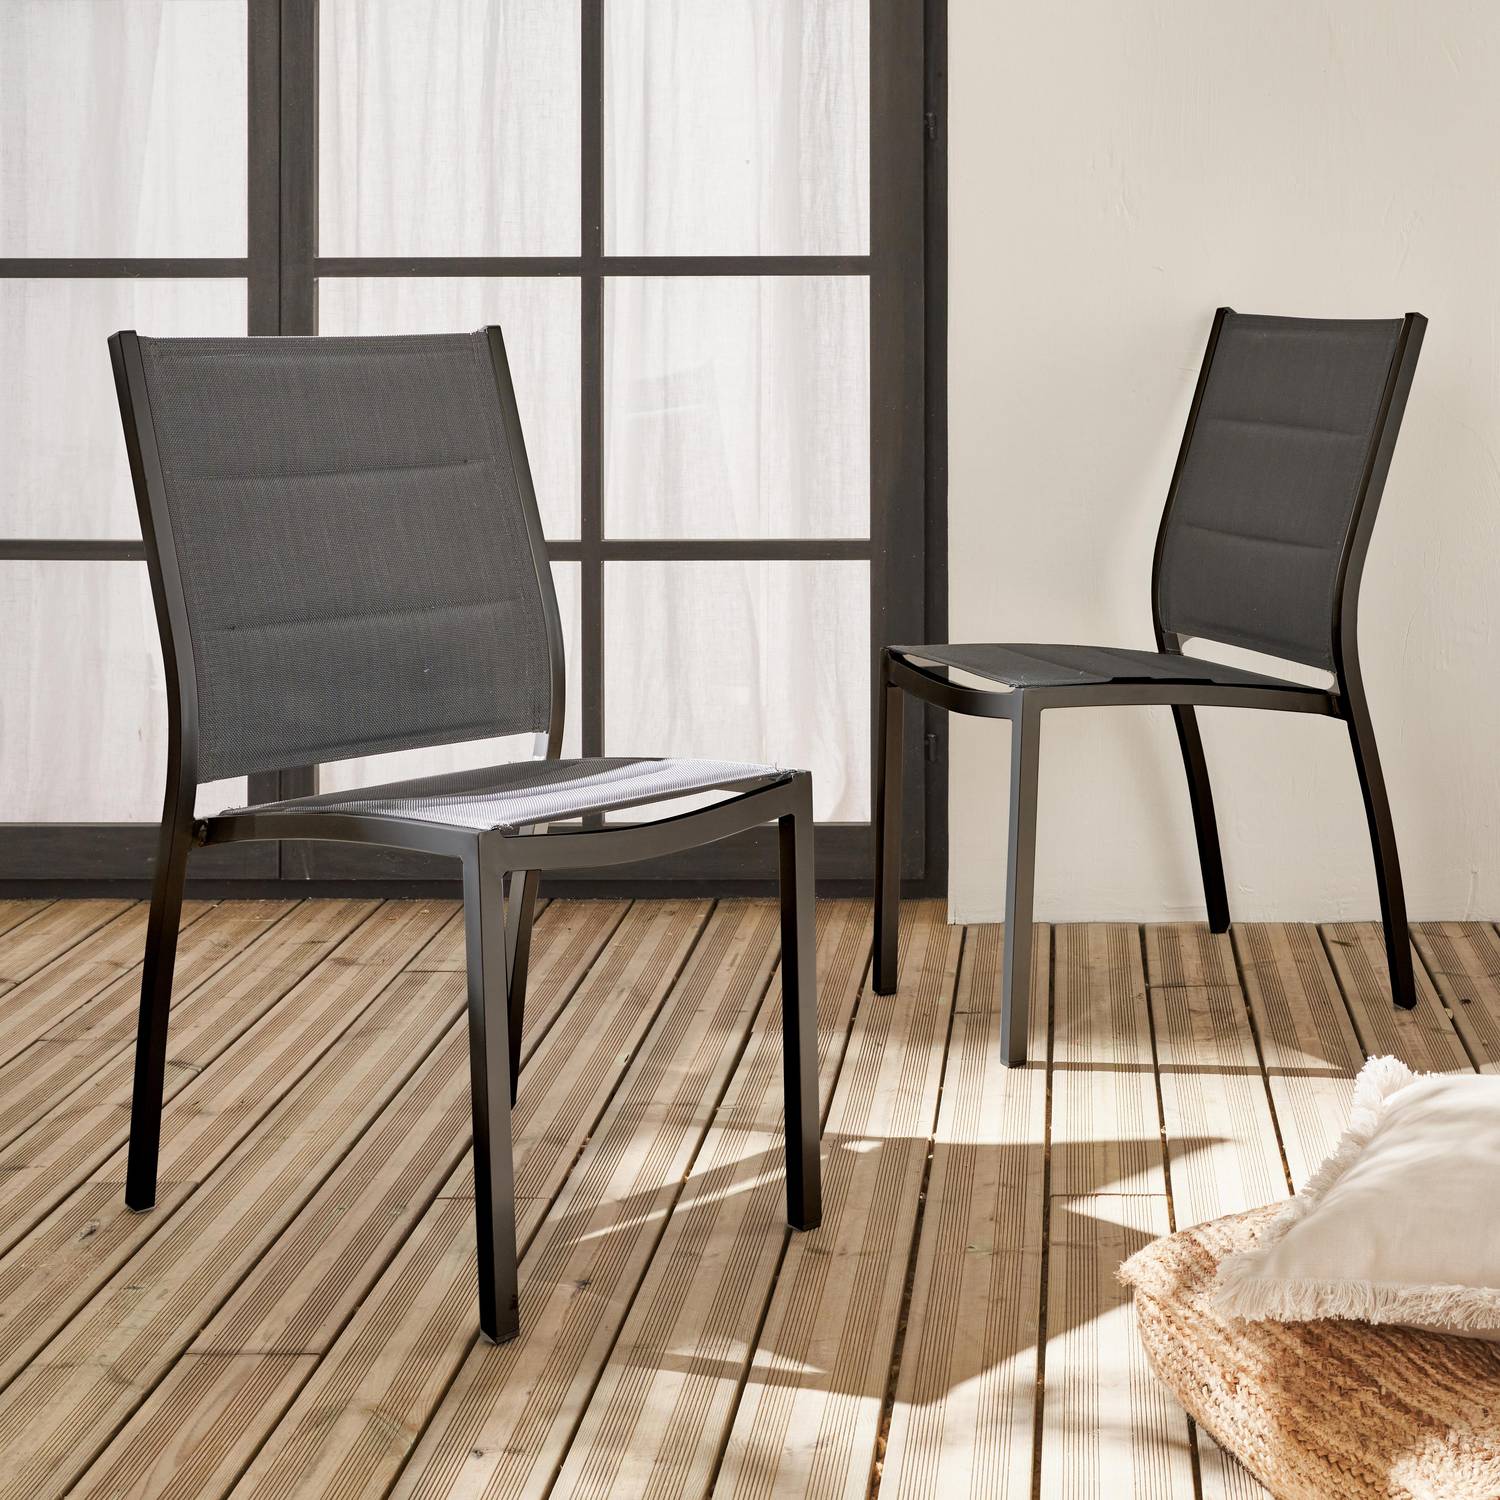 2er Set Stühle - Chicago / Odenton Anthrazit - Aus anthrazitfarbenem Aluminium und dunkelgrauem Textil, stapelbar Photo1